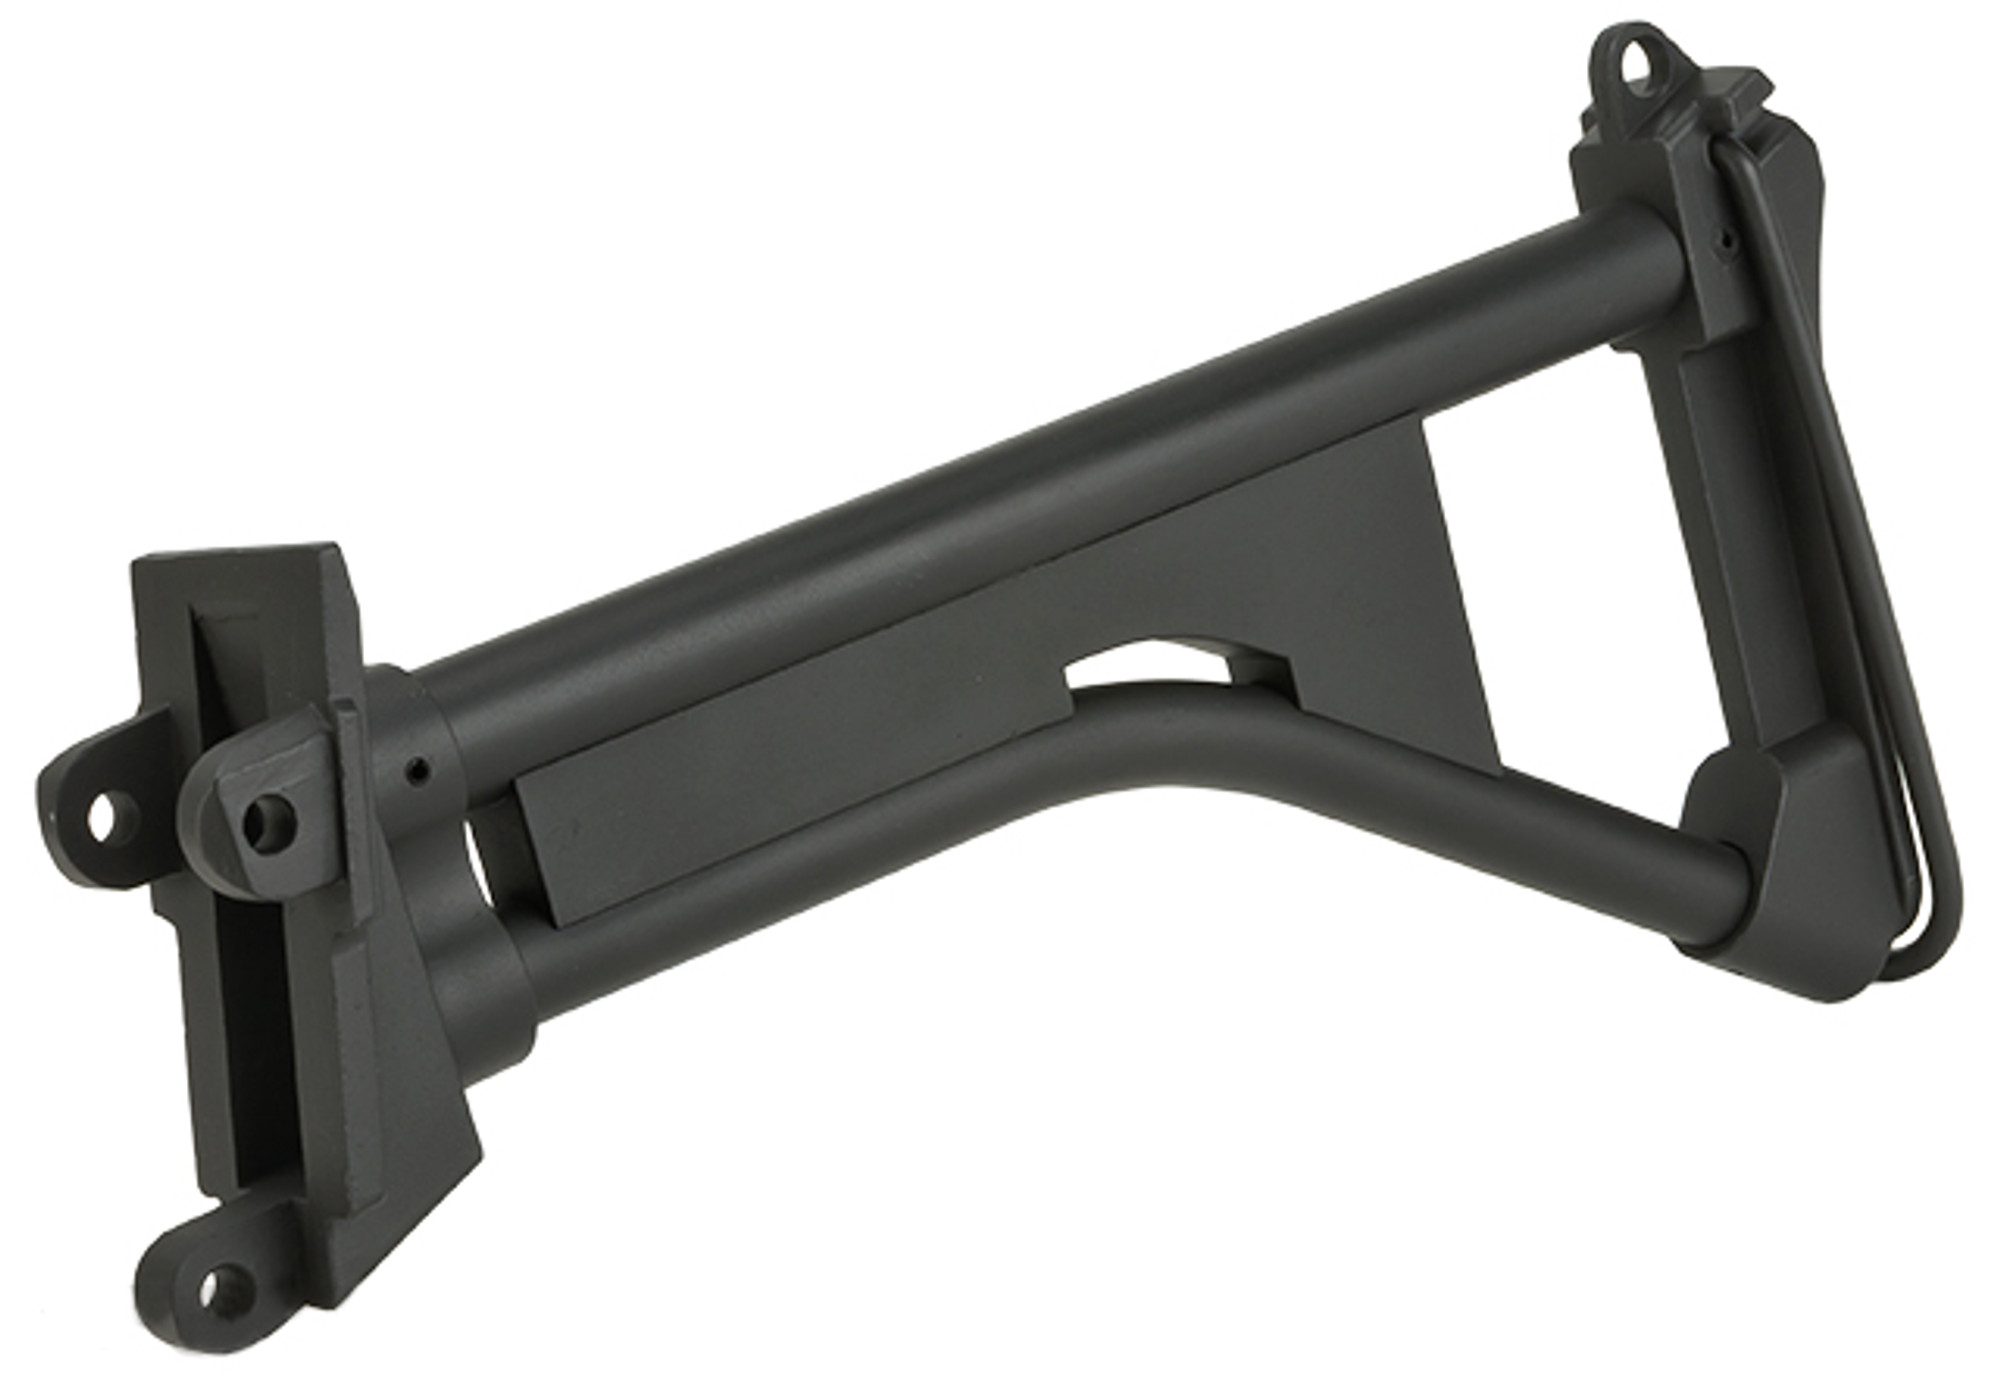 A&K Full Size Metal Skeleton Stock for M249 MK-1 AEG Rifles - Black